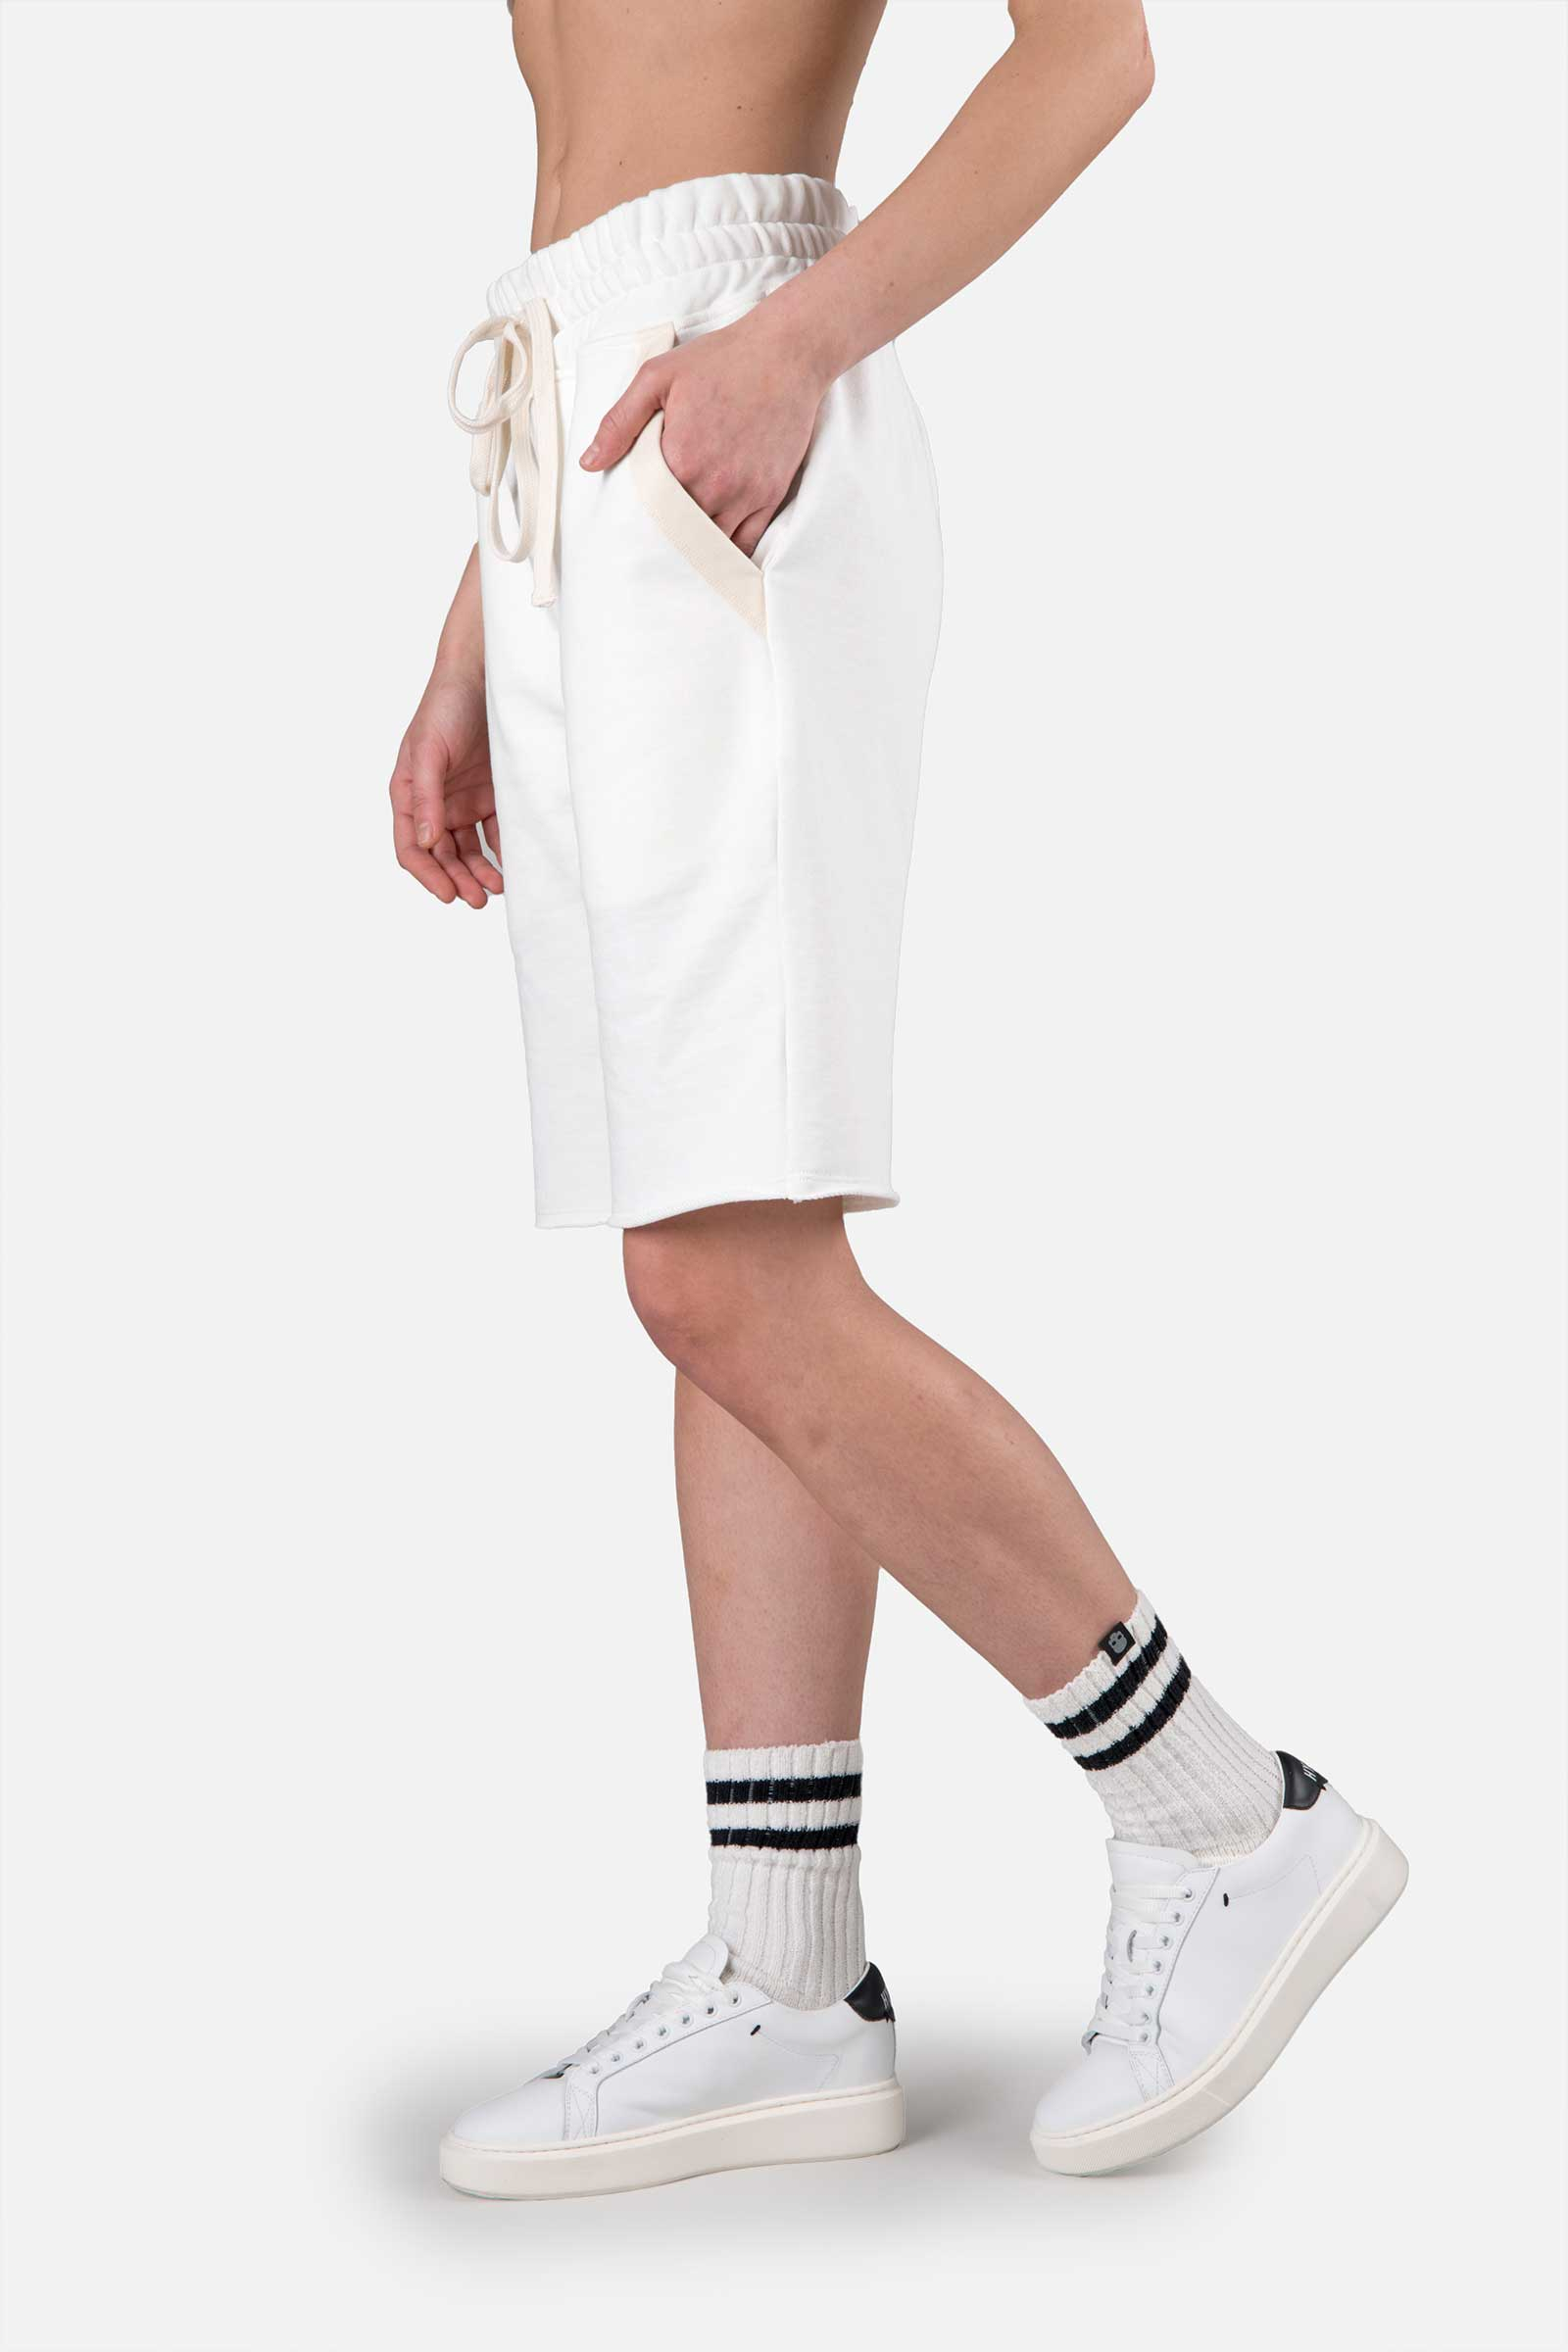 SHORTS - WHITE - Hydrogen - Luxury Sportwear